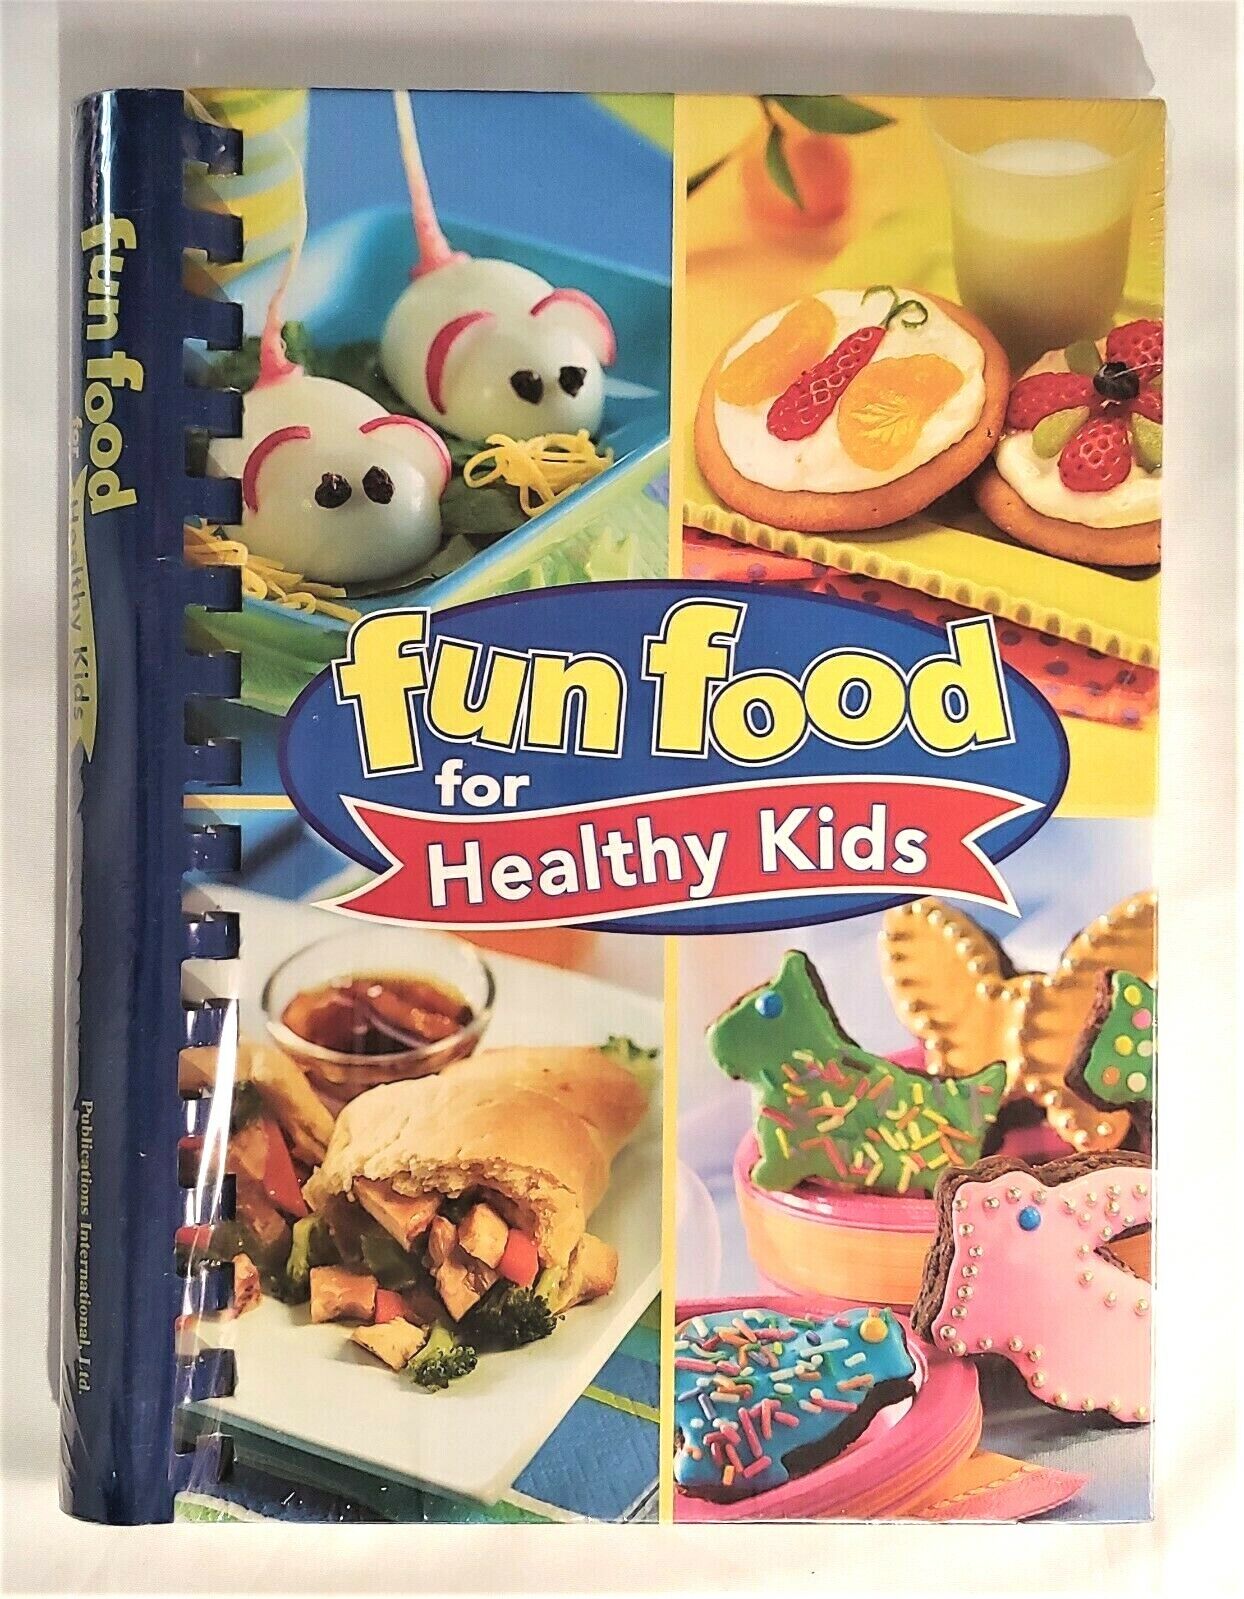 Market Day Heathy Kids Fun Food Recipe Spiral Bound Book Sealed